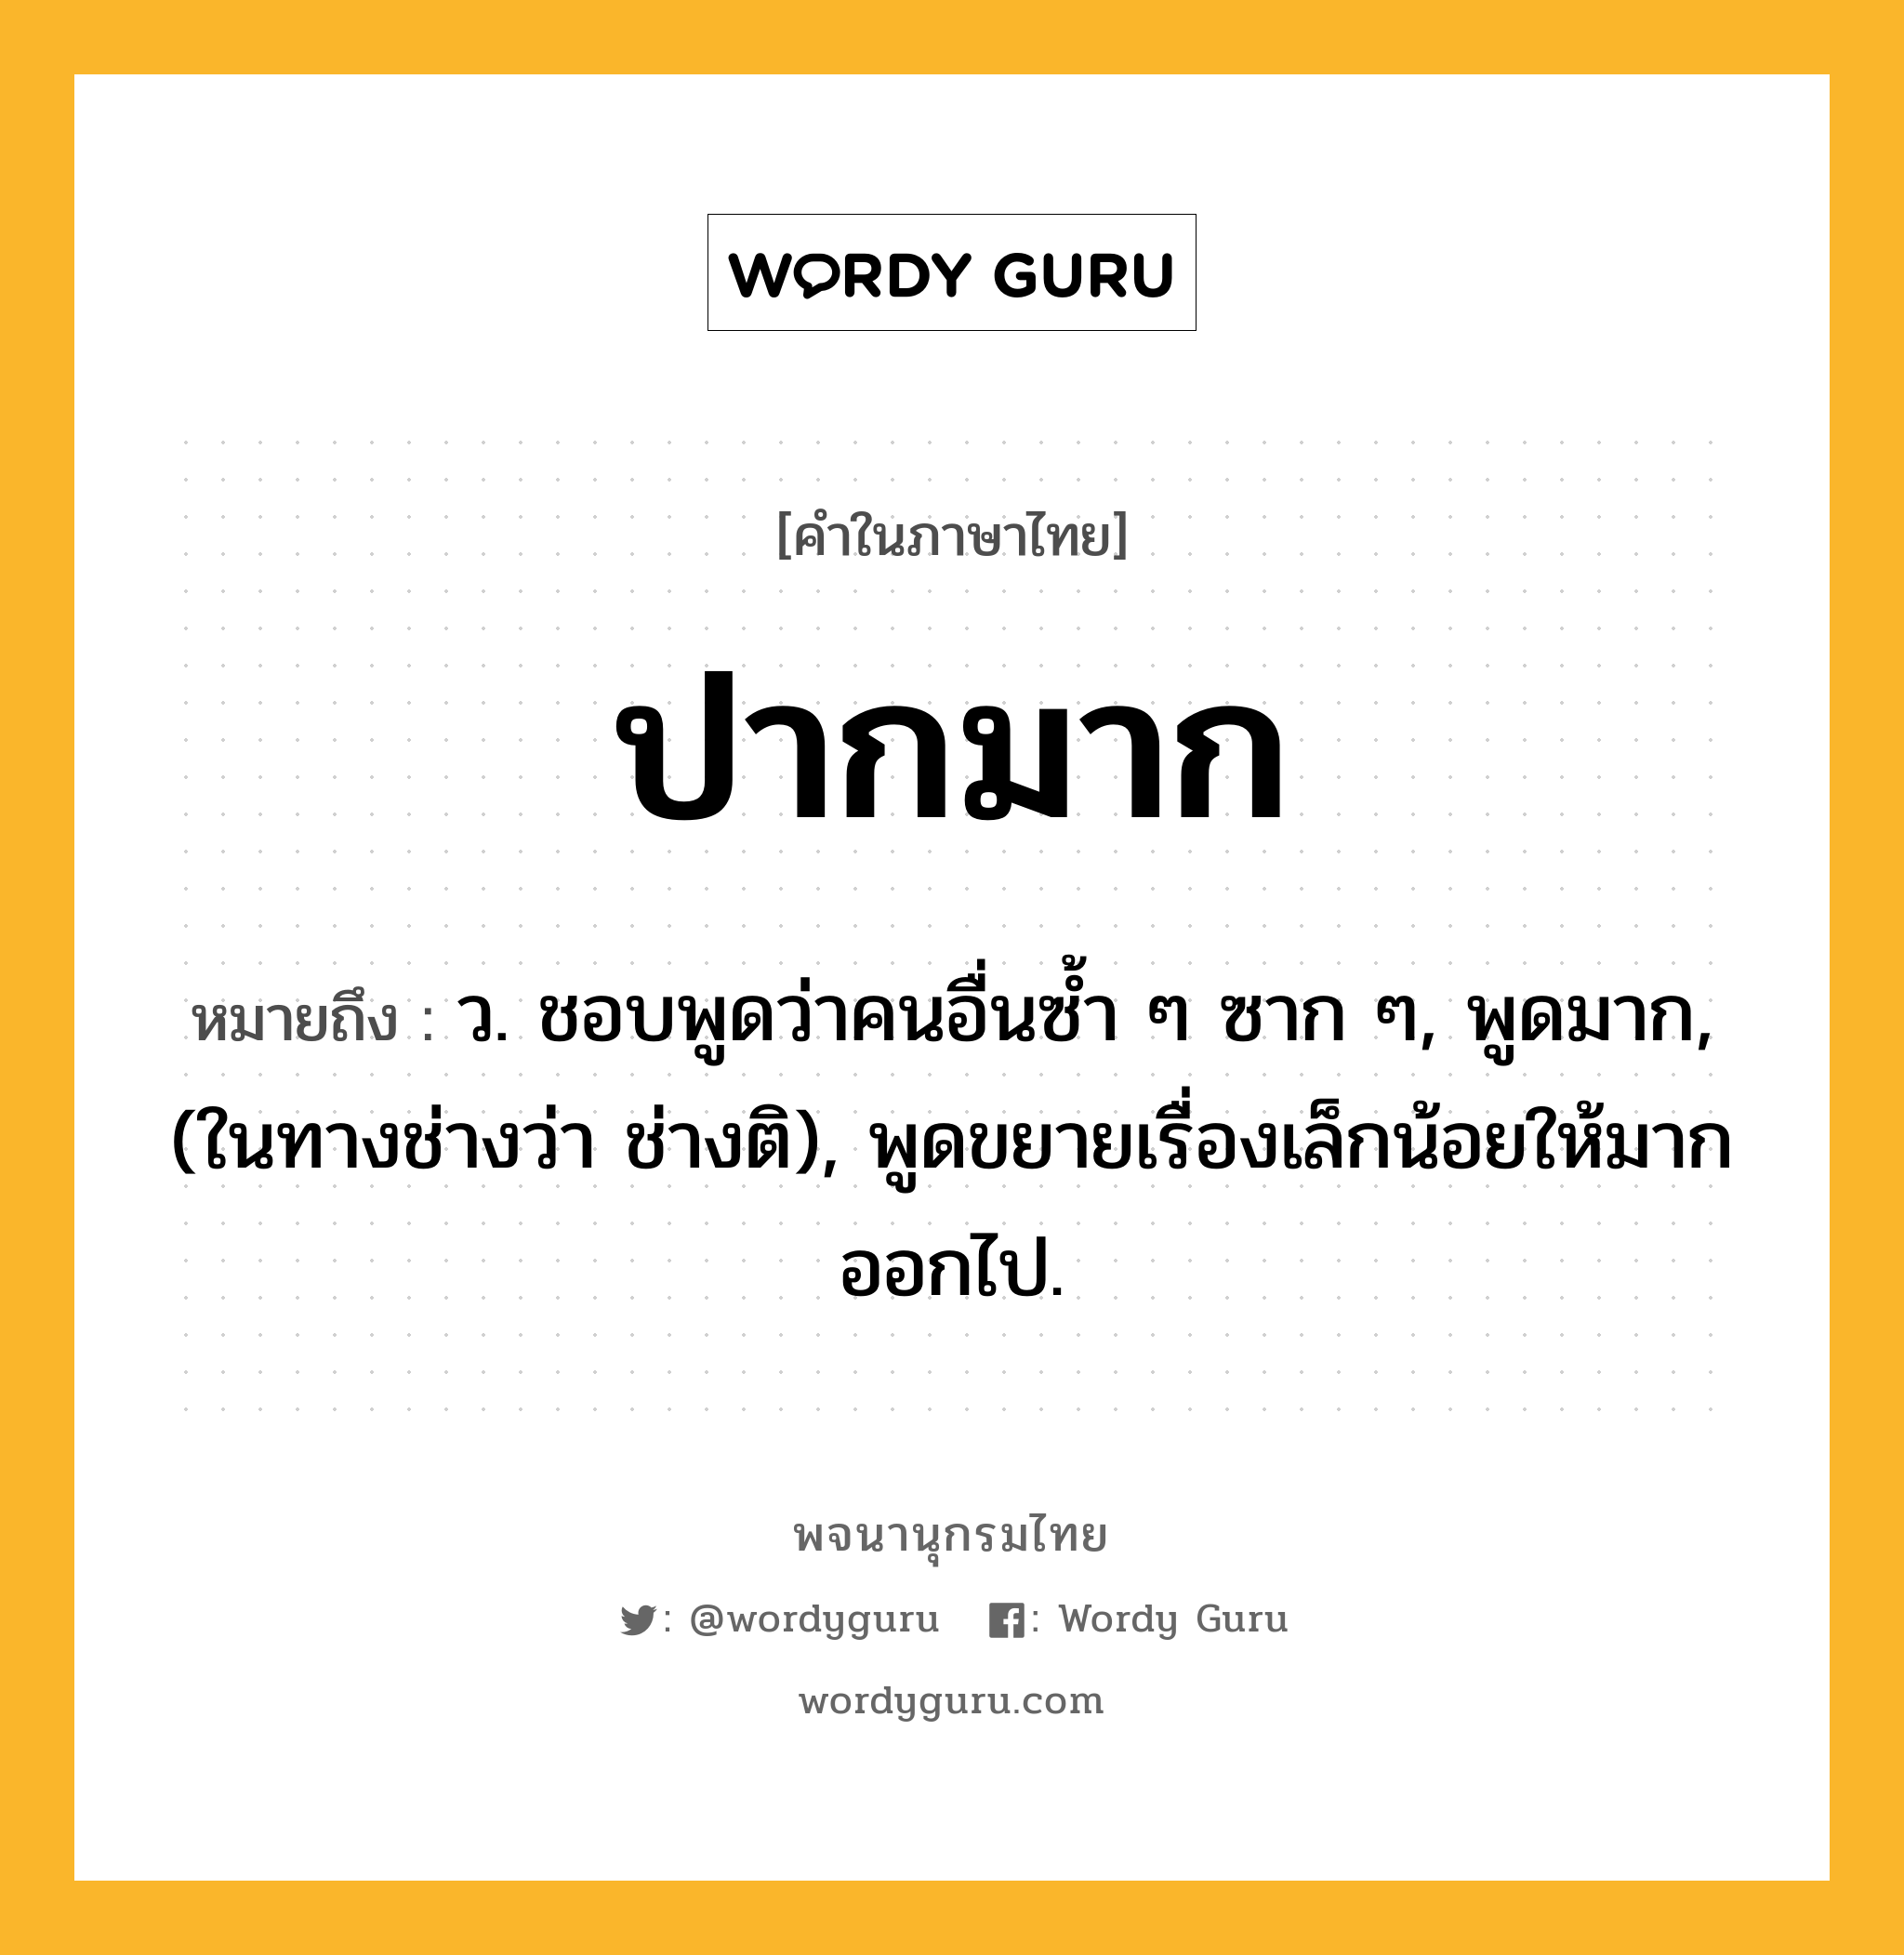 ปากมาก ความหมาย หมายถึงอะไร?, คำในภาษาไทย ปากมาก หมายถึง ว. ชอบพูดว่าคนอื่นซํ้า ๆ ซาก ๆ, พูดมาก, (ในทางช่างว่า ช่างติ), พูดขยายเรื่องเล็กน้อยให้มากออกไป.